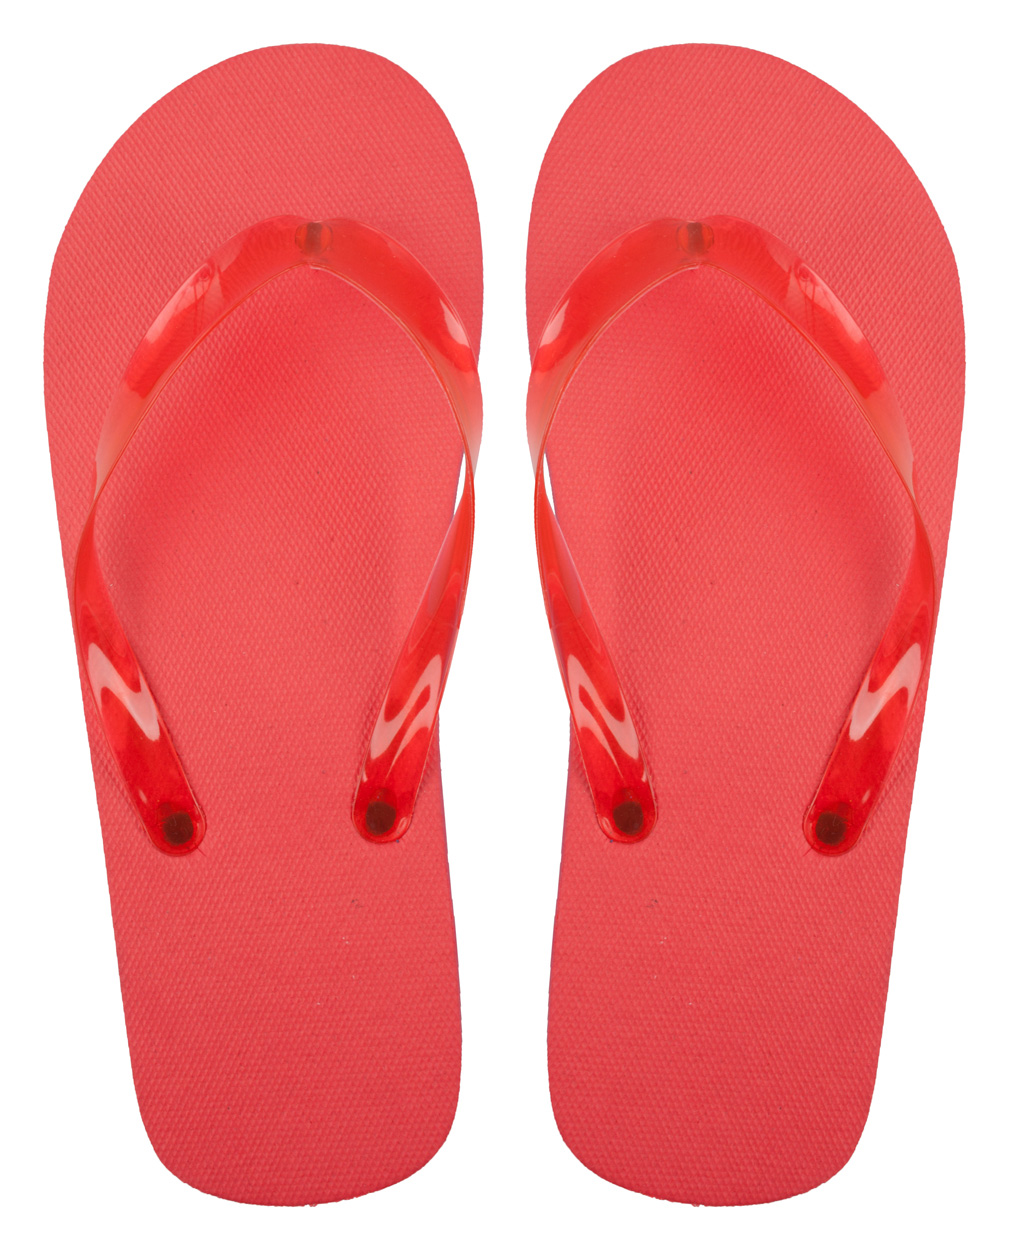 Boracay Beach Flip Flops - red